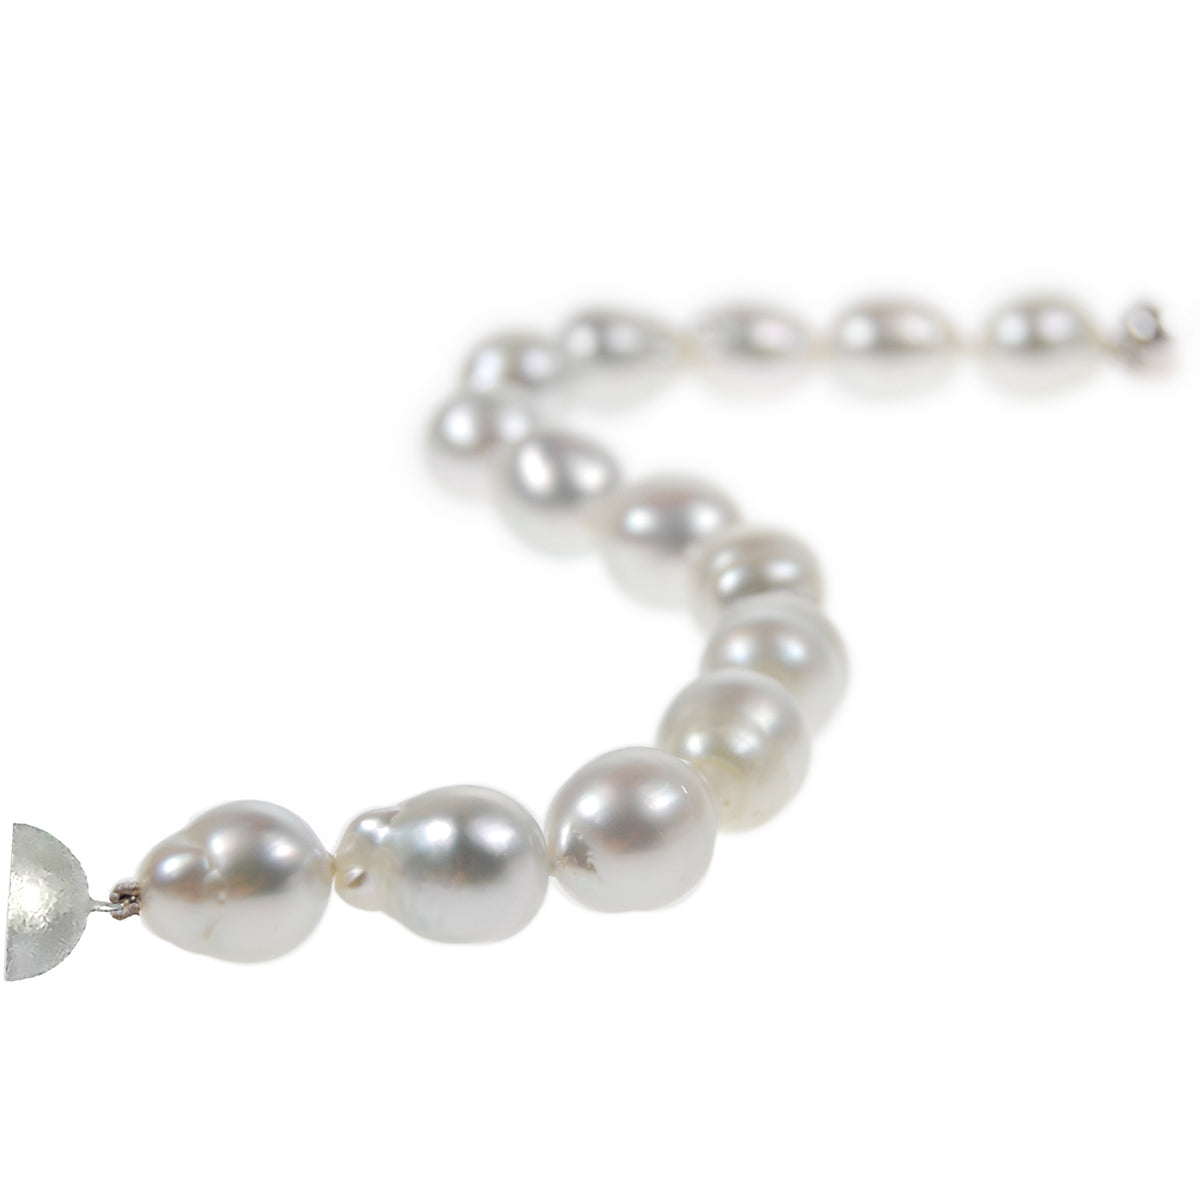 White South Sea Pearl Bracelet